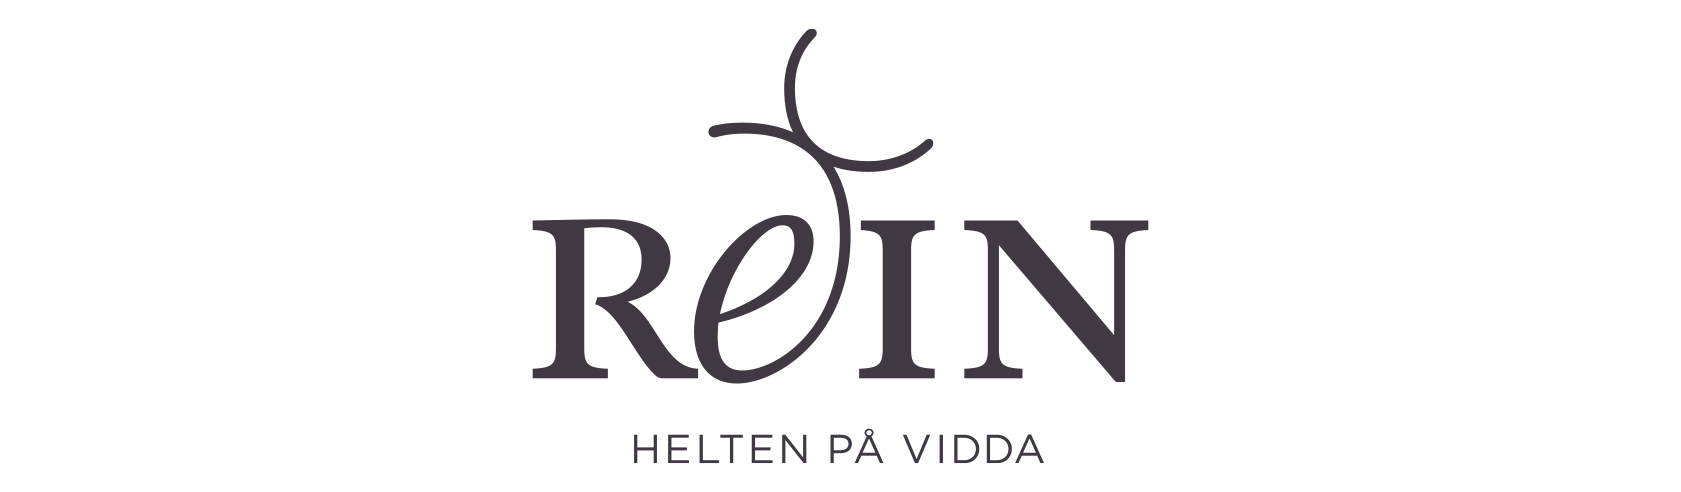 REIN logo. Visuell identitet Visual identity.